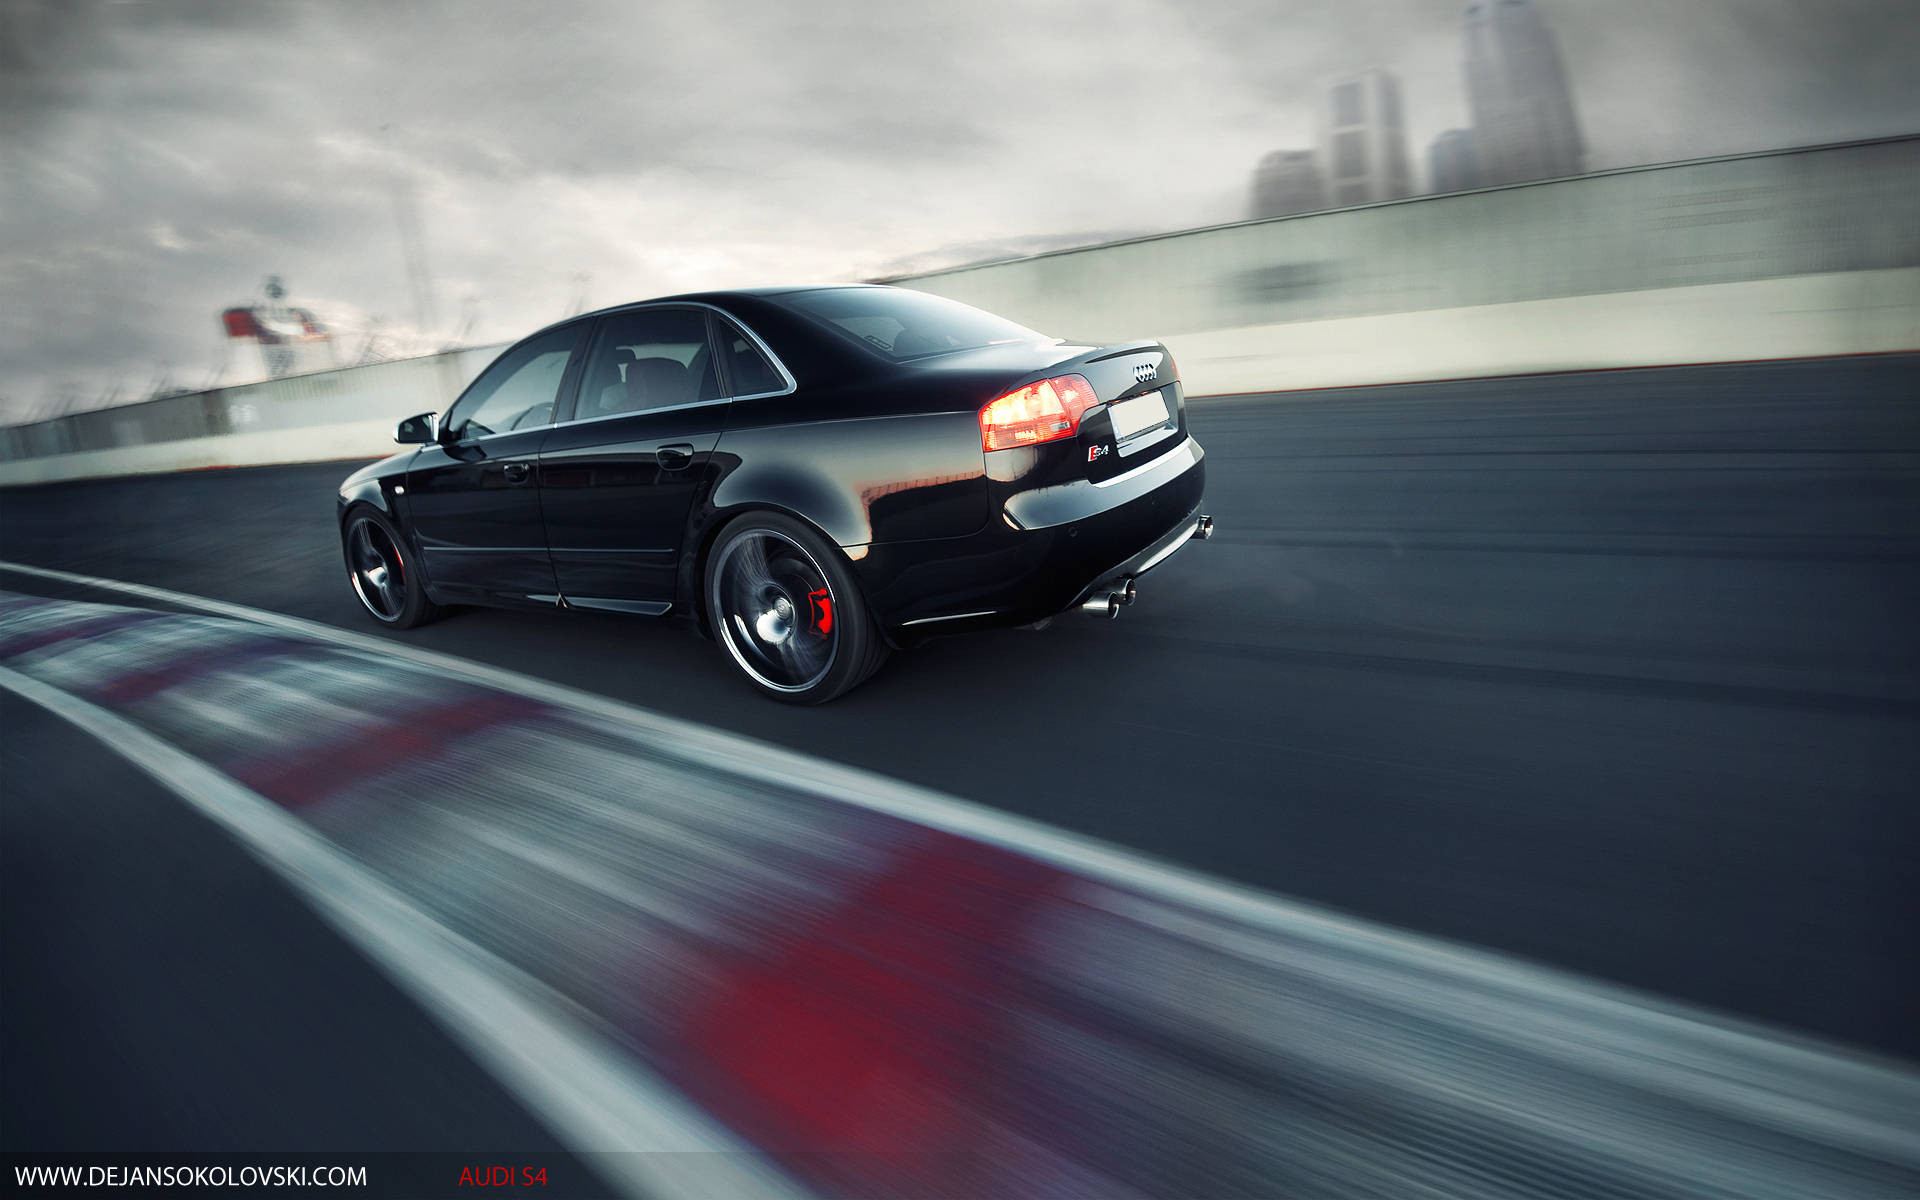 cars, Audi, back view, German cars - desktop wallpaper